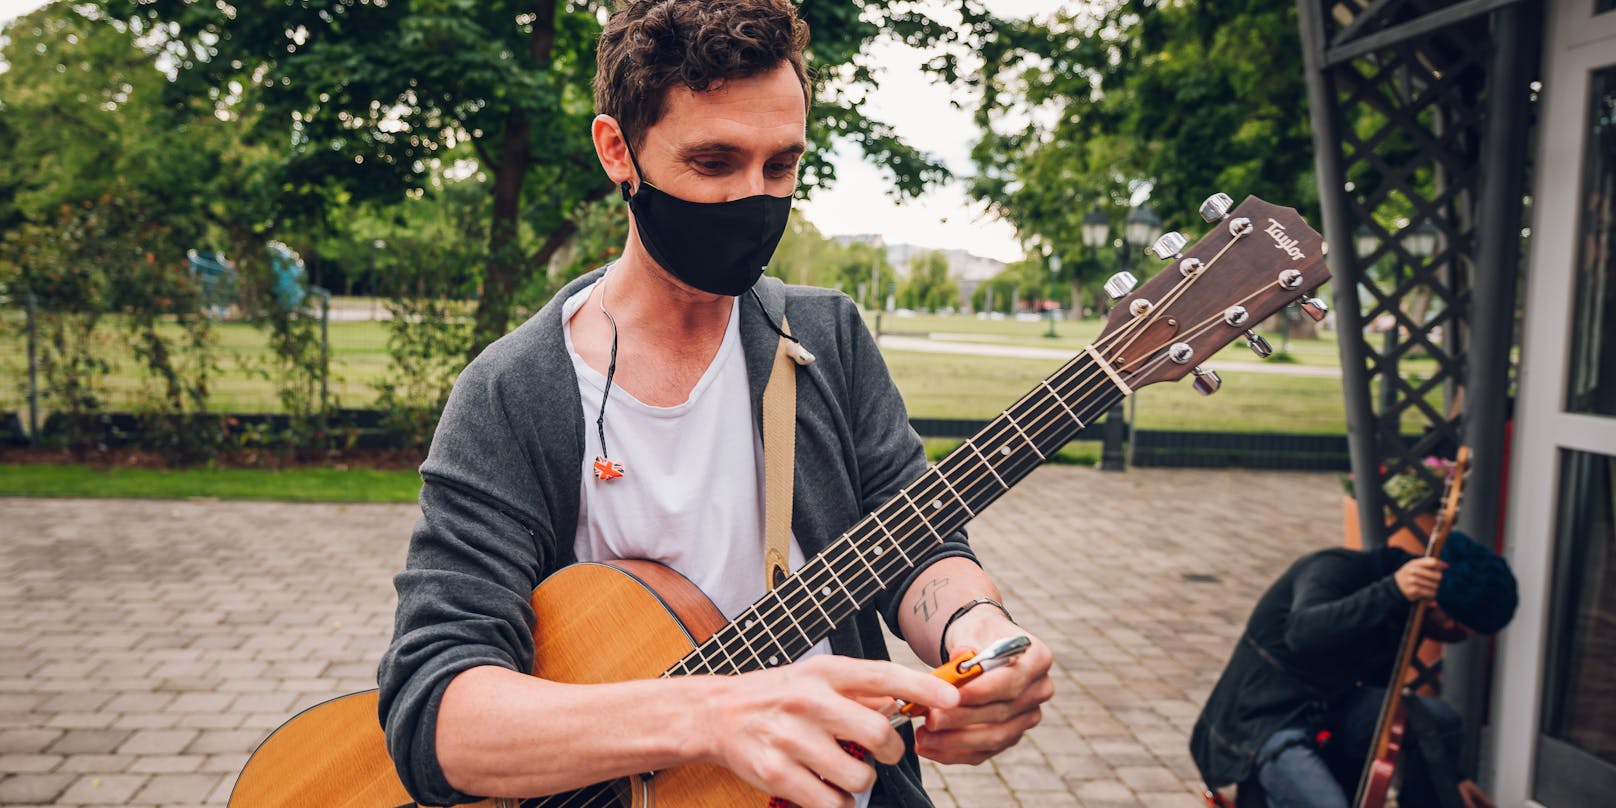 Der Musiker in seiner Rolle als Vorbild – mit Maske